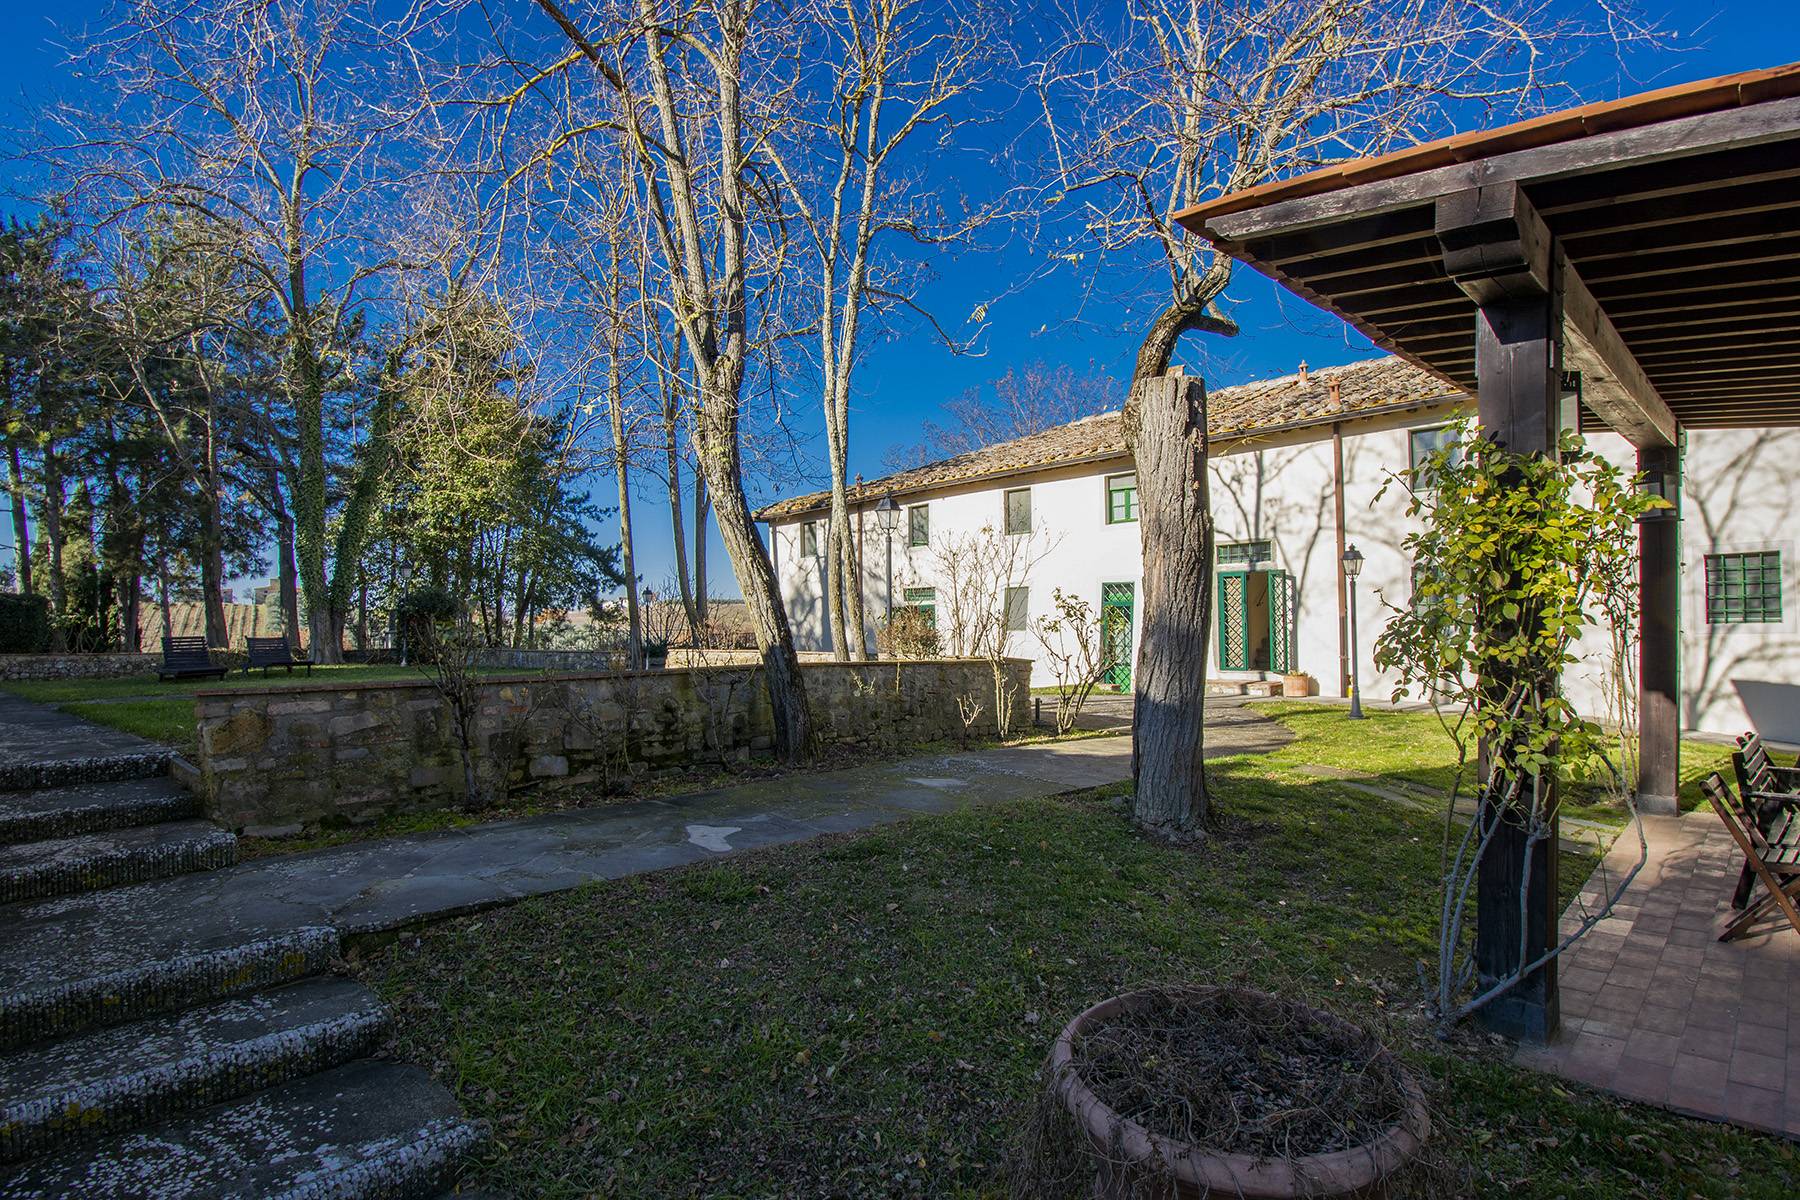 Villa in Vendita a Barberino Tavarnelle: 5 locali, 1200 mq - Foto 14